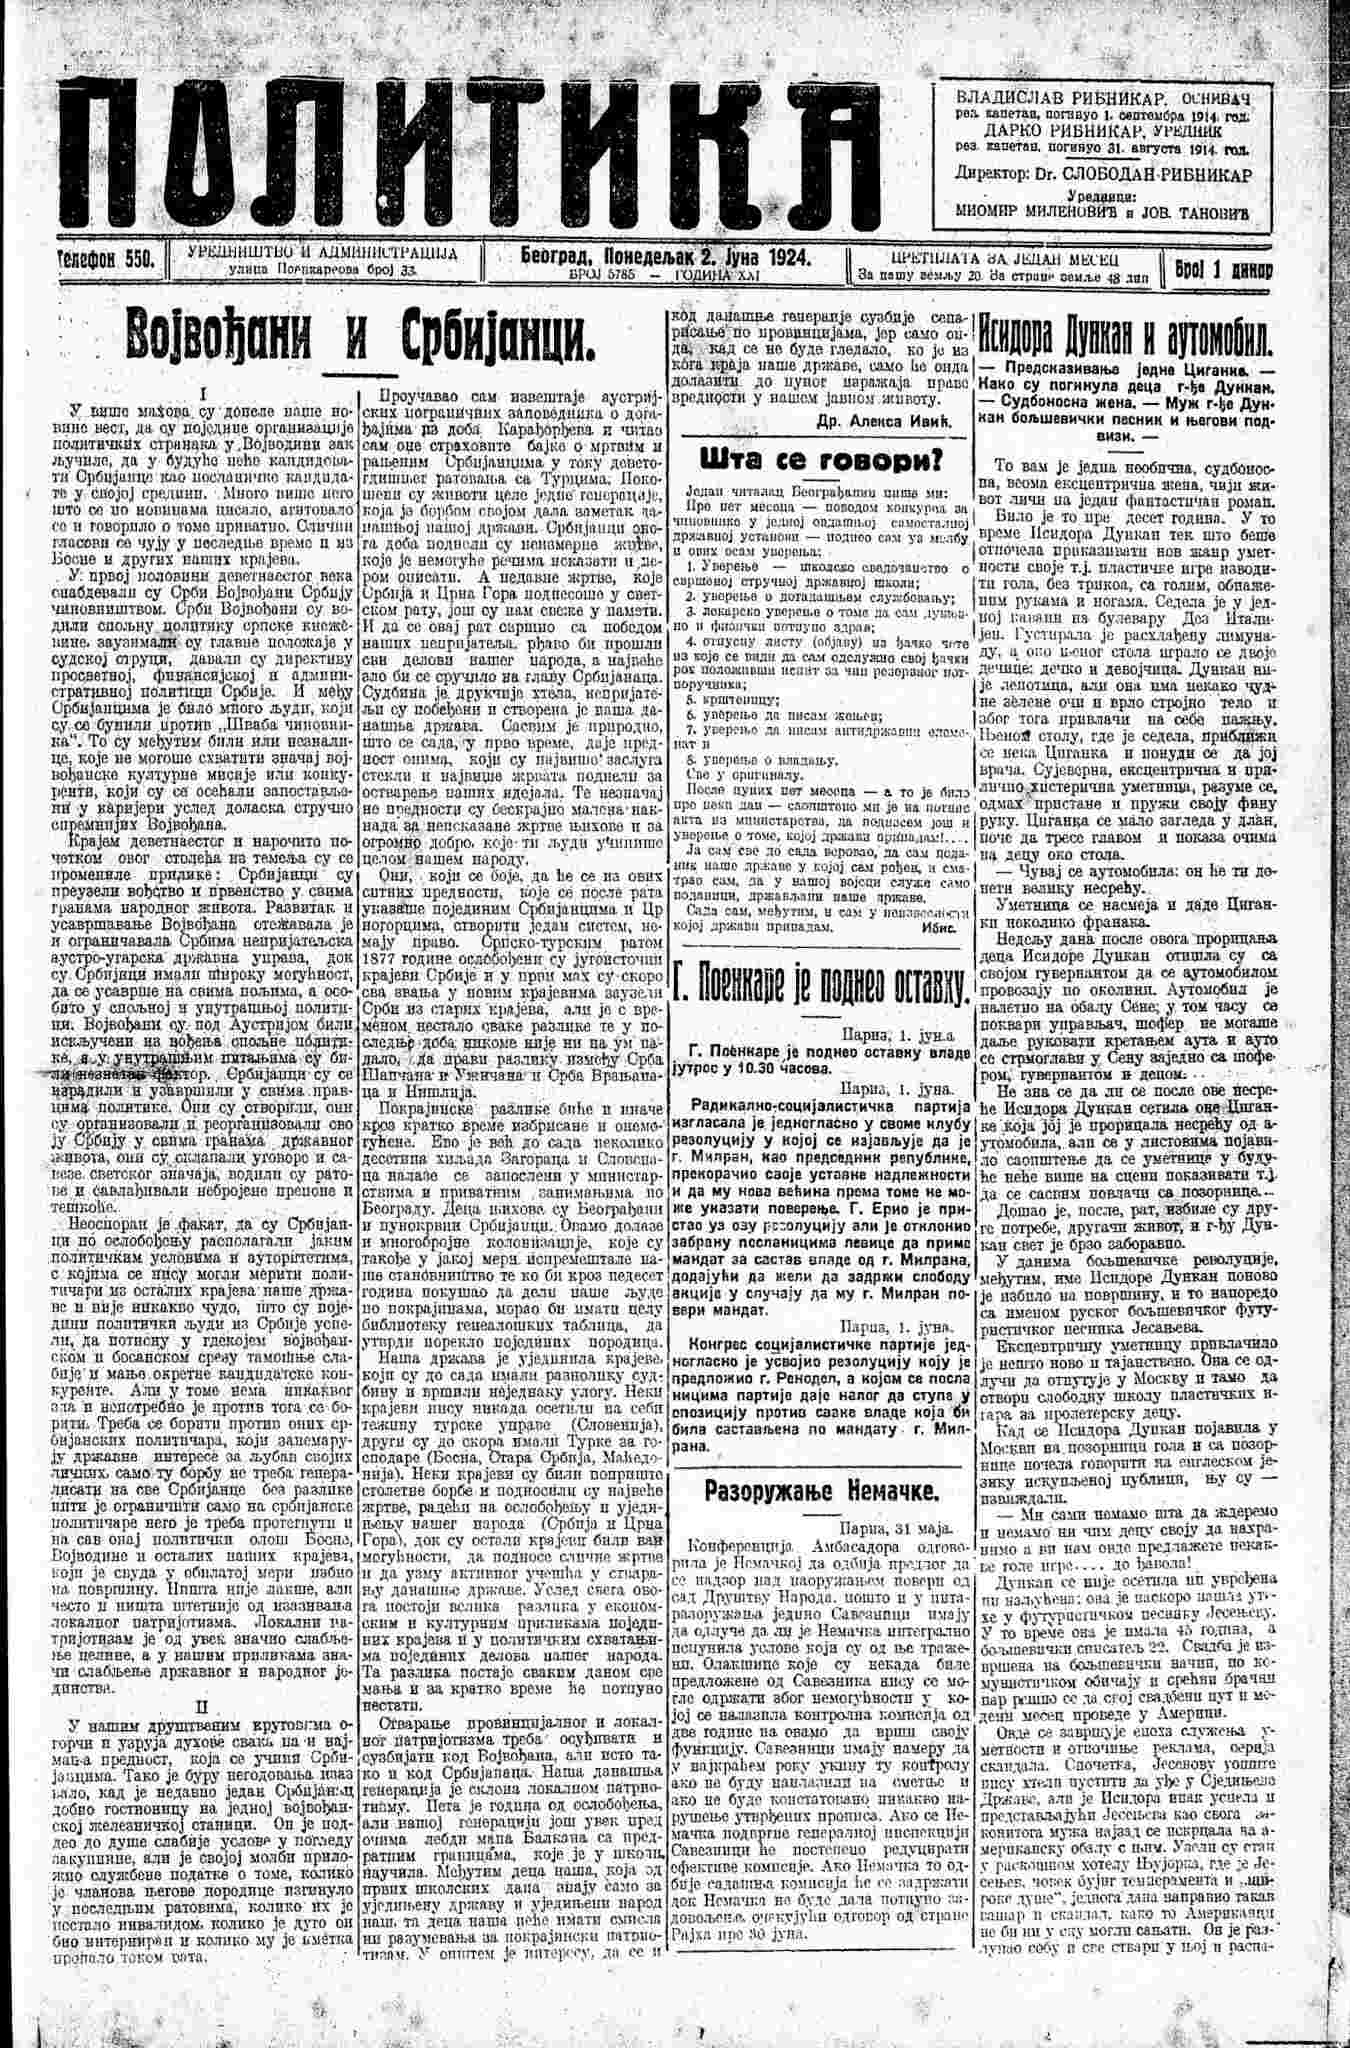 Vojvodina - Page 4 192410